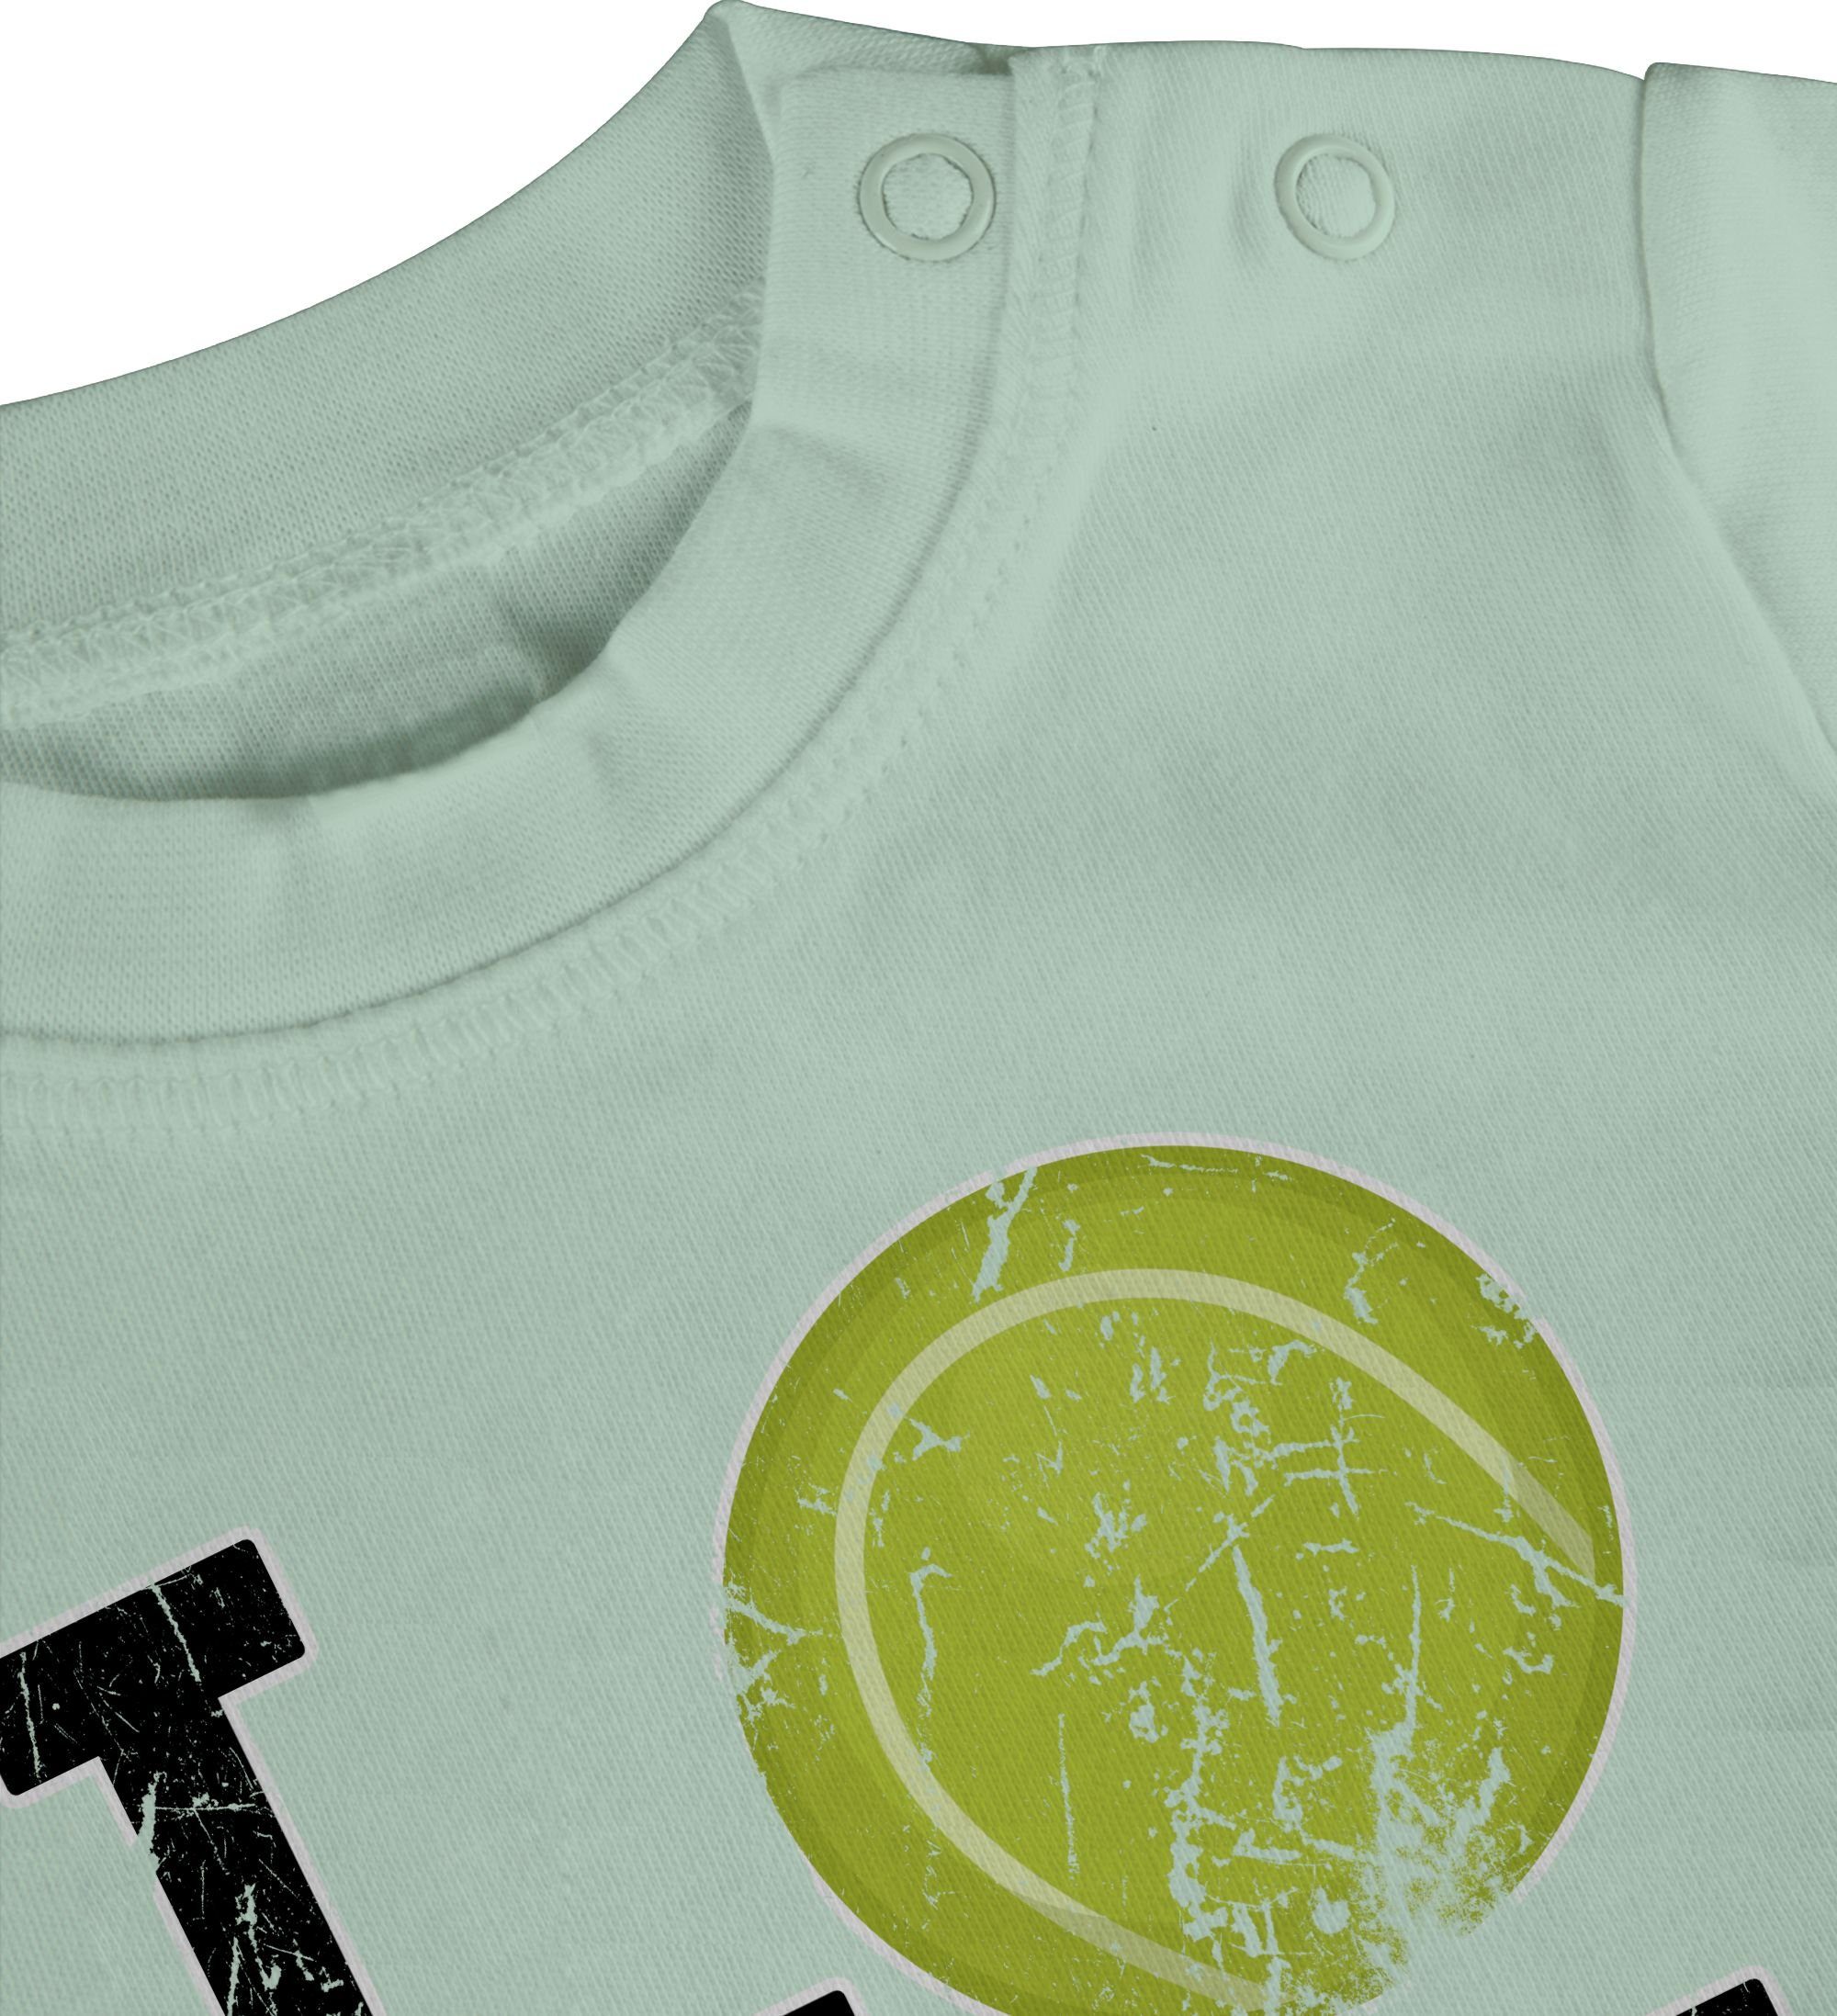 Shirtracer T-Shirt Love Baby Tennis Sport 2 Bewegung & Mintgrün